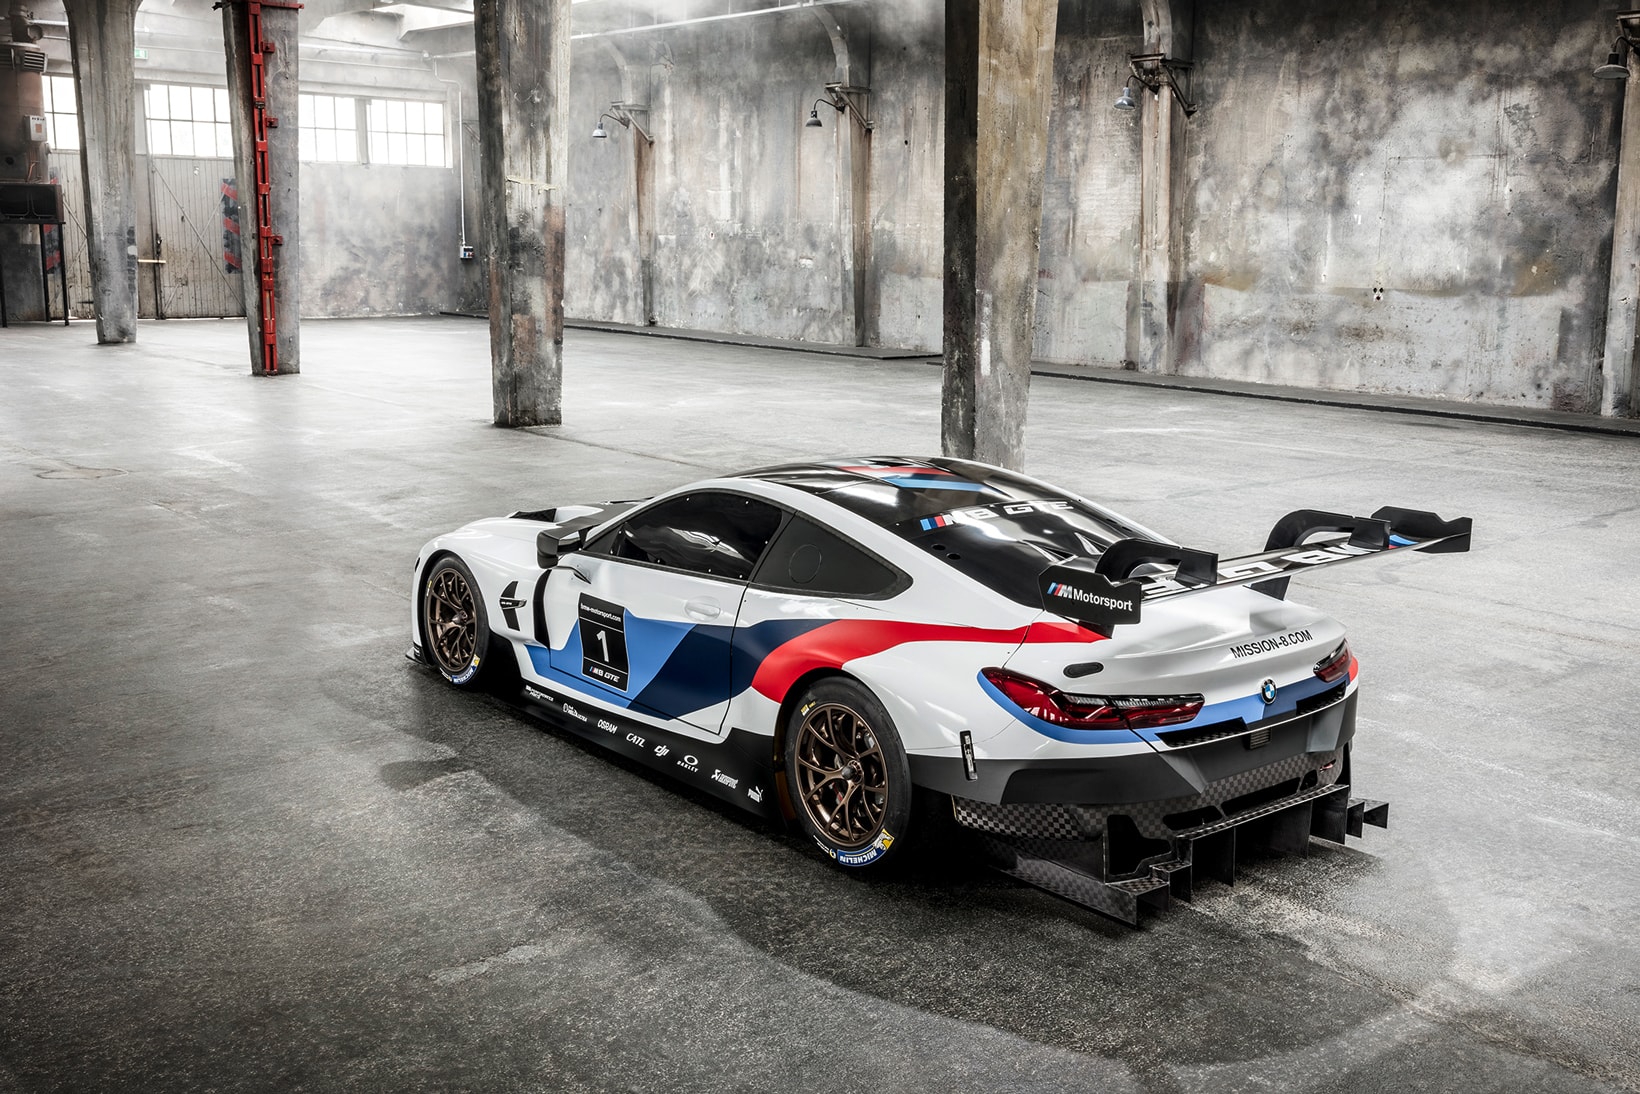 BMW M8 GTE 2017 2018 6 Series Coupe Replacement le mans car sportscar racecar